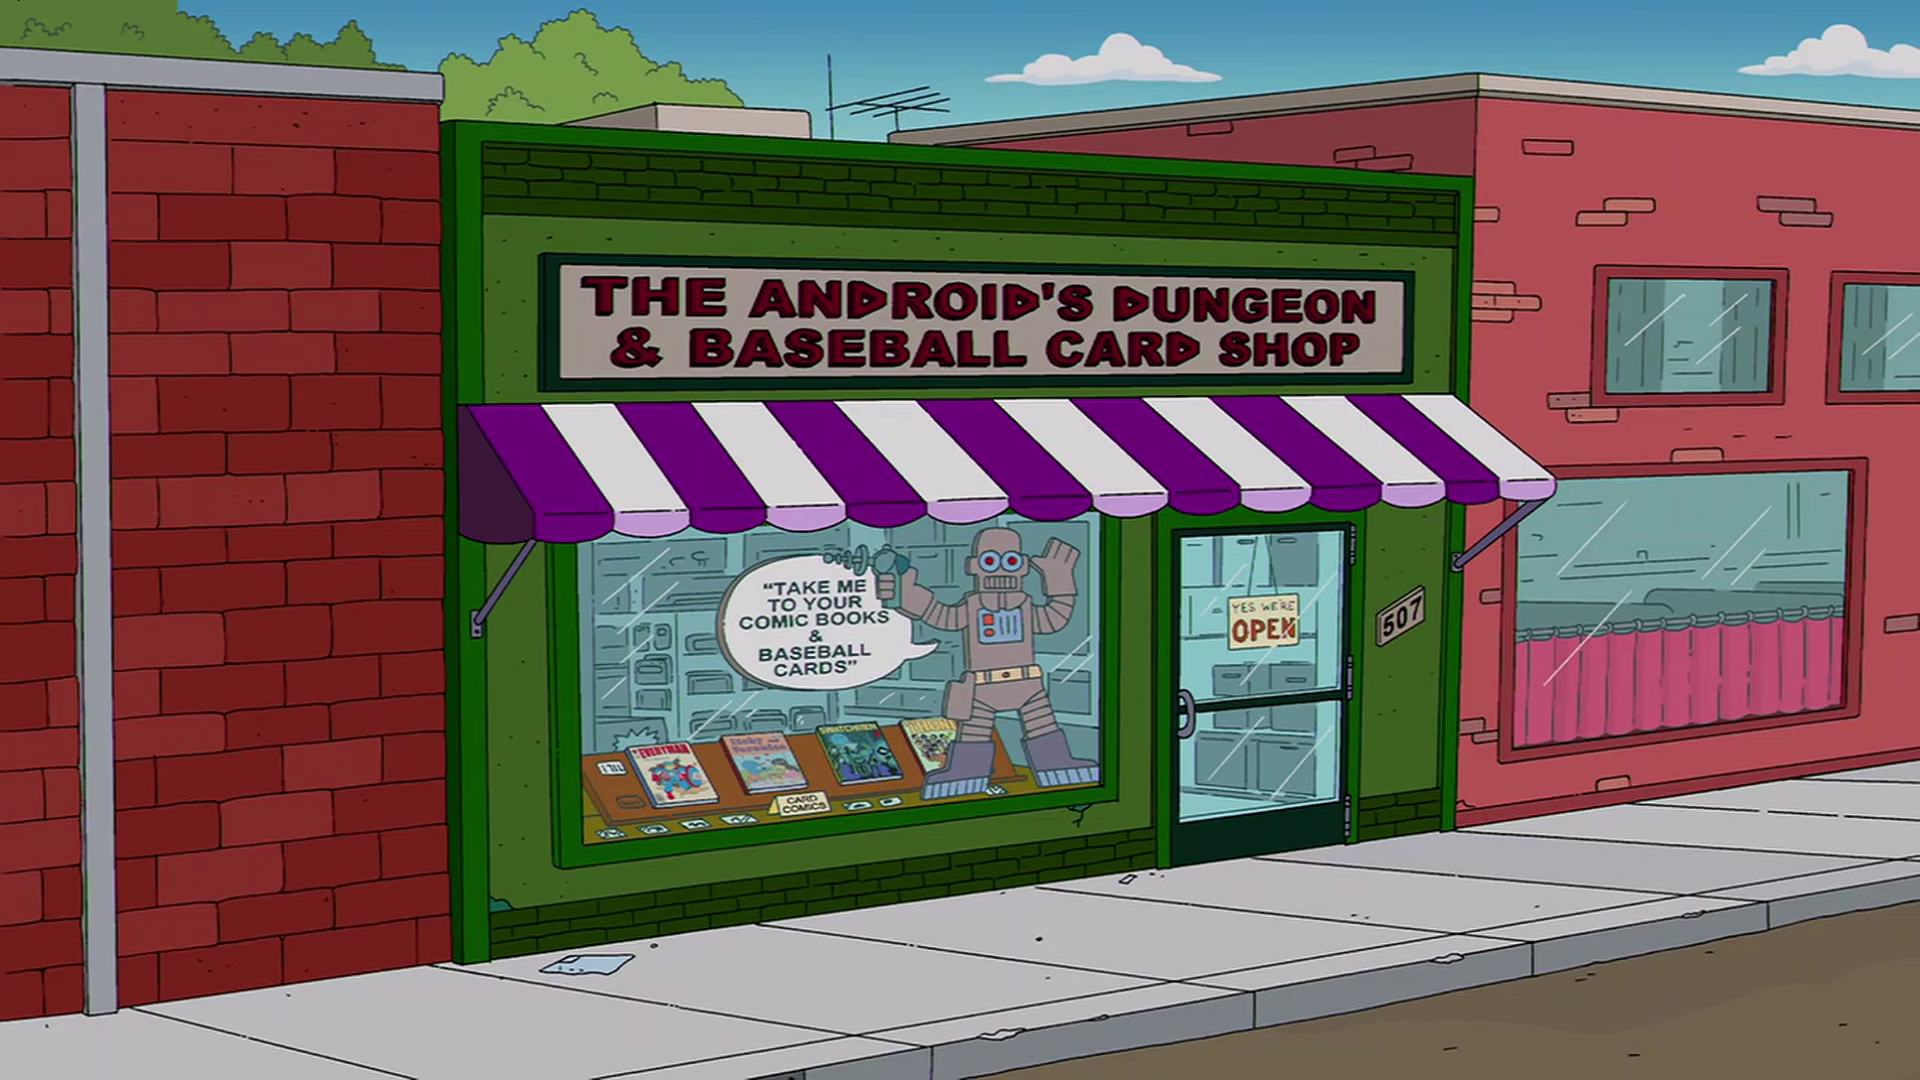 Simp dungeon. Симпсоны магазин комиксов. Продавец комиксов симпсоны. Симпсоны магазин. Реклама магазина комиксов.